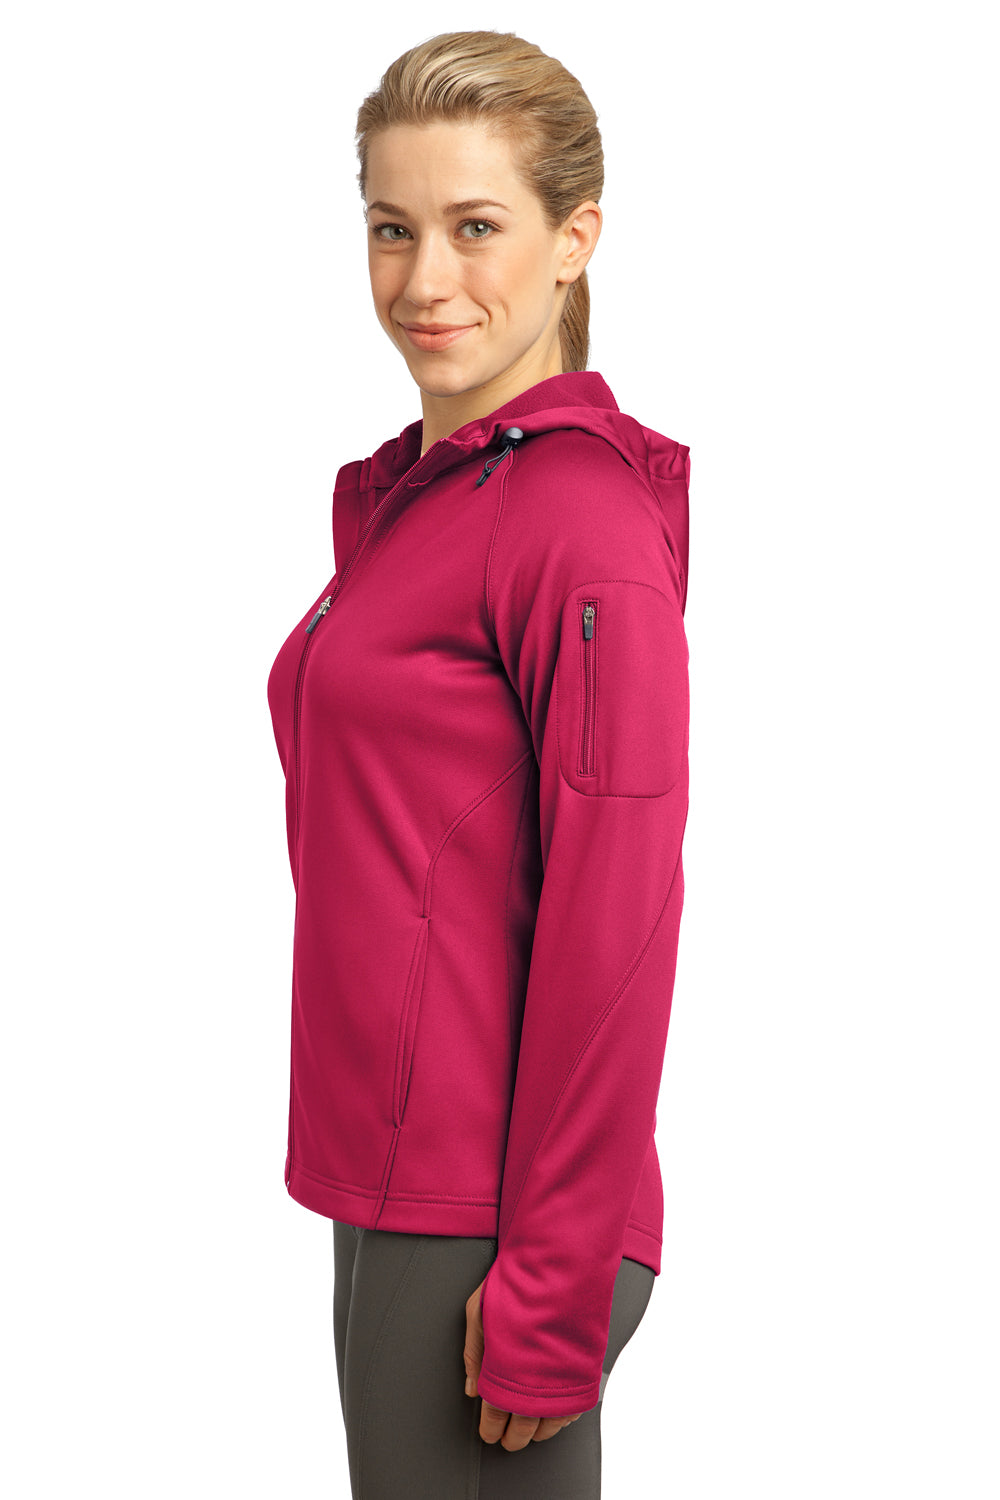 Sport-Tek L248 Womens Tech Moisture Wicking Fleece Full Zip Hooded Sweatshirt Hoodie Fuchsia Pink Side